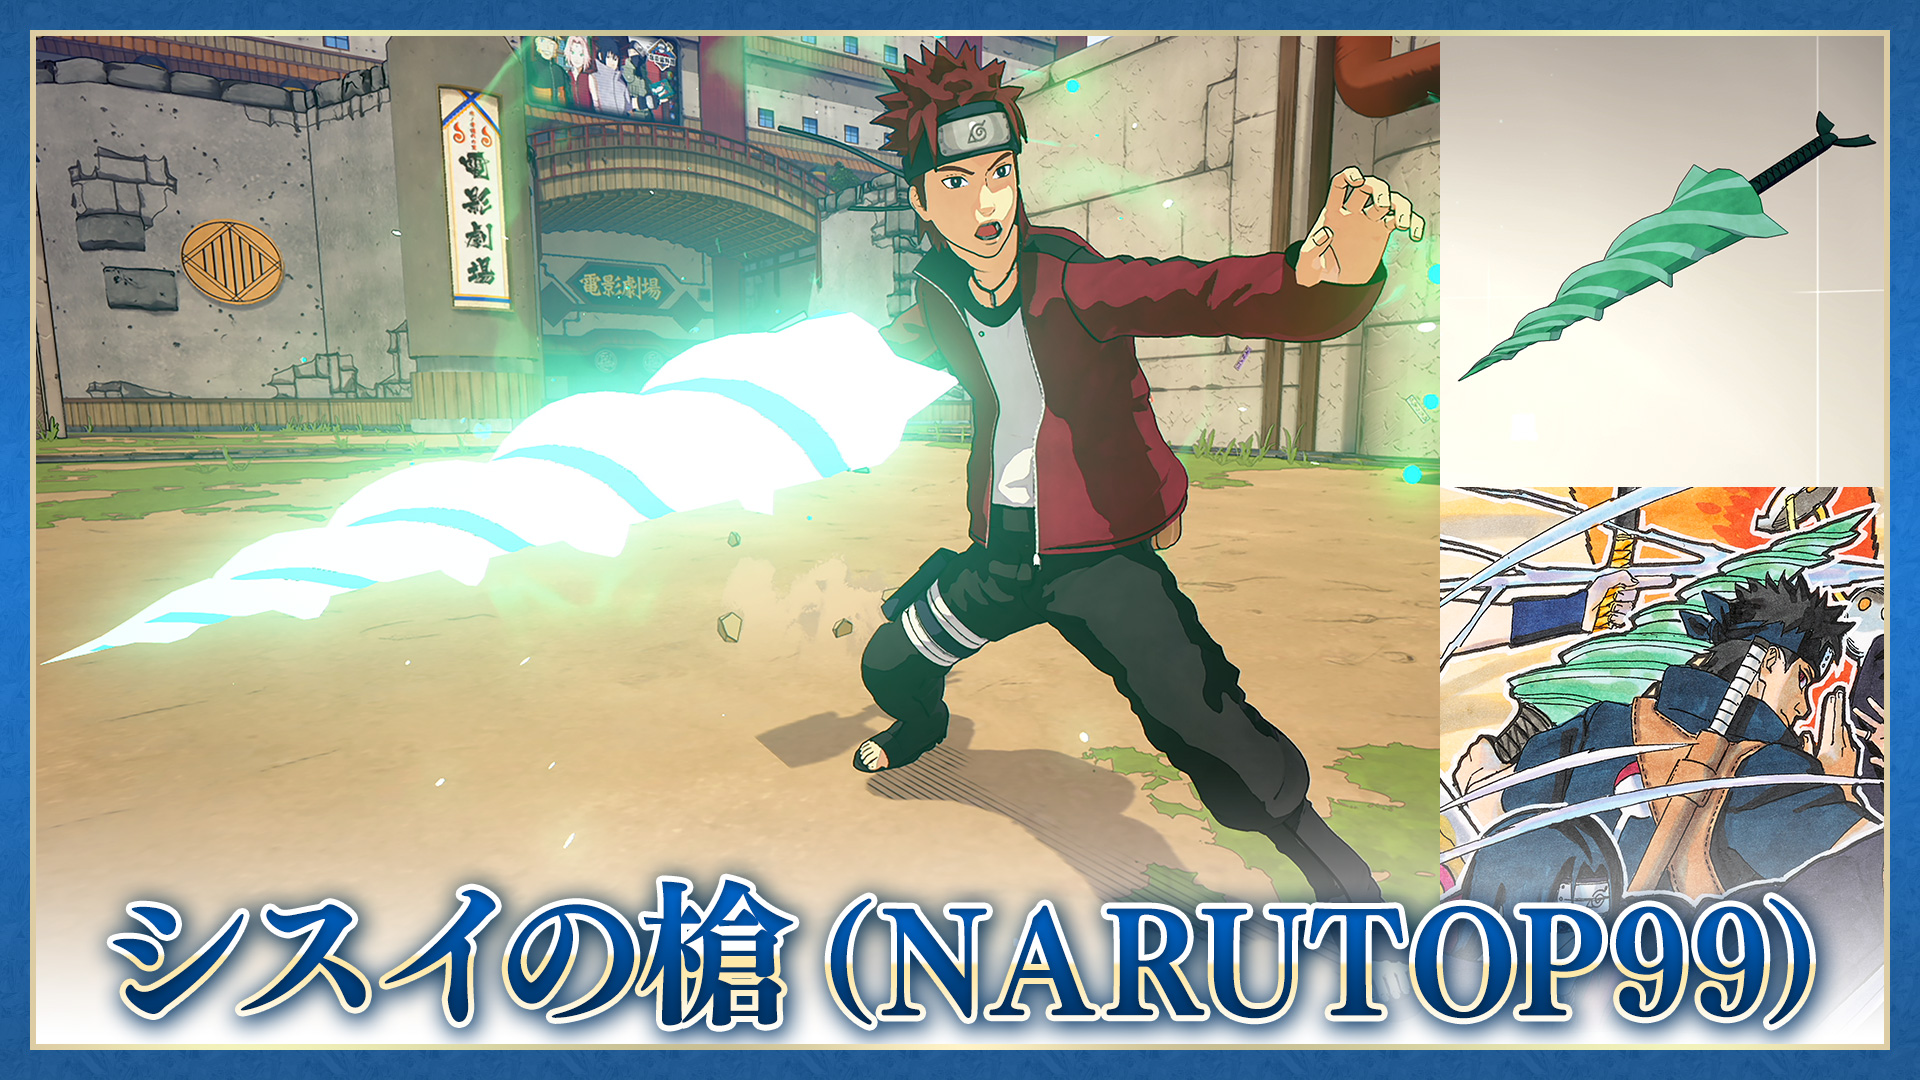 Naruto to Boruto: Shinobi Striker - Boruto Uzumaki (Karma) Launch